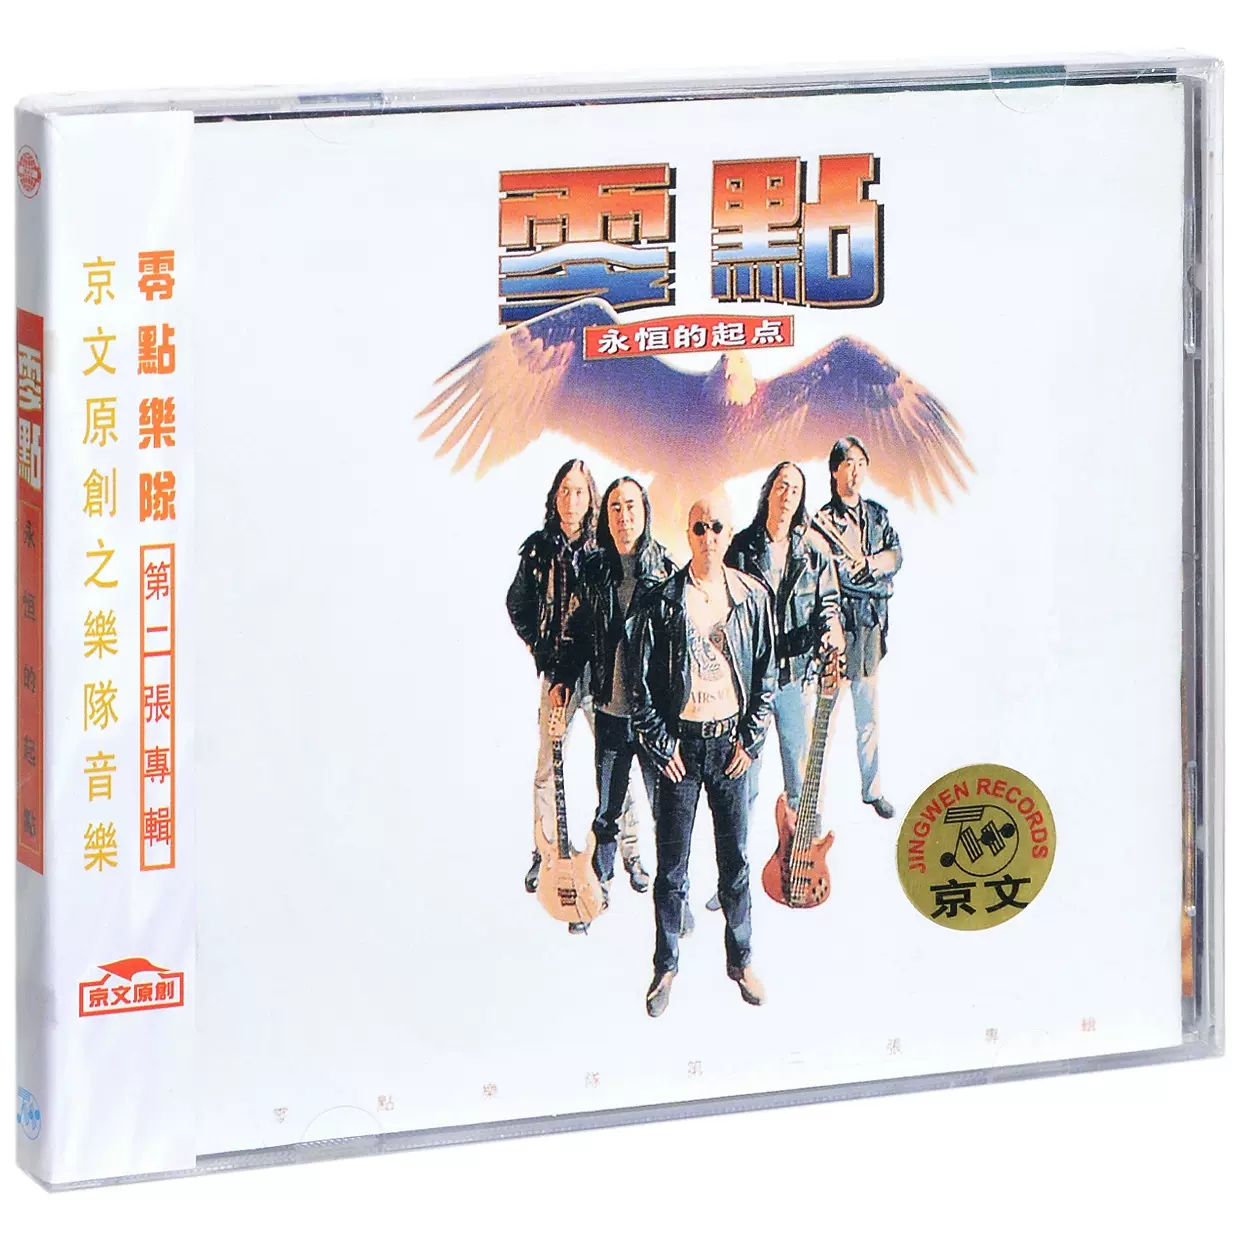 正版唱片 零点乐队 永恒的起点 华语摇滚音乐CD专辑 车载碟片